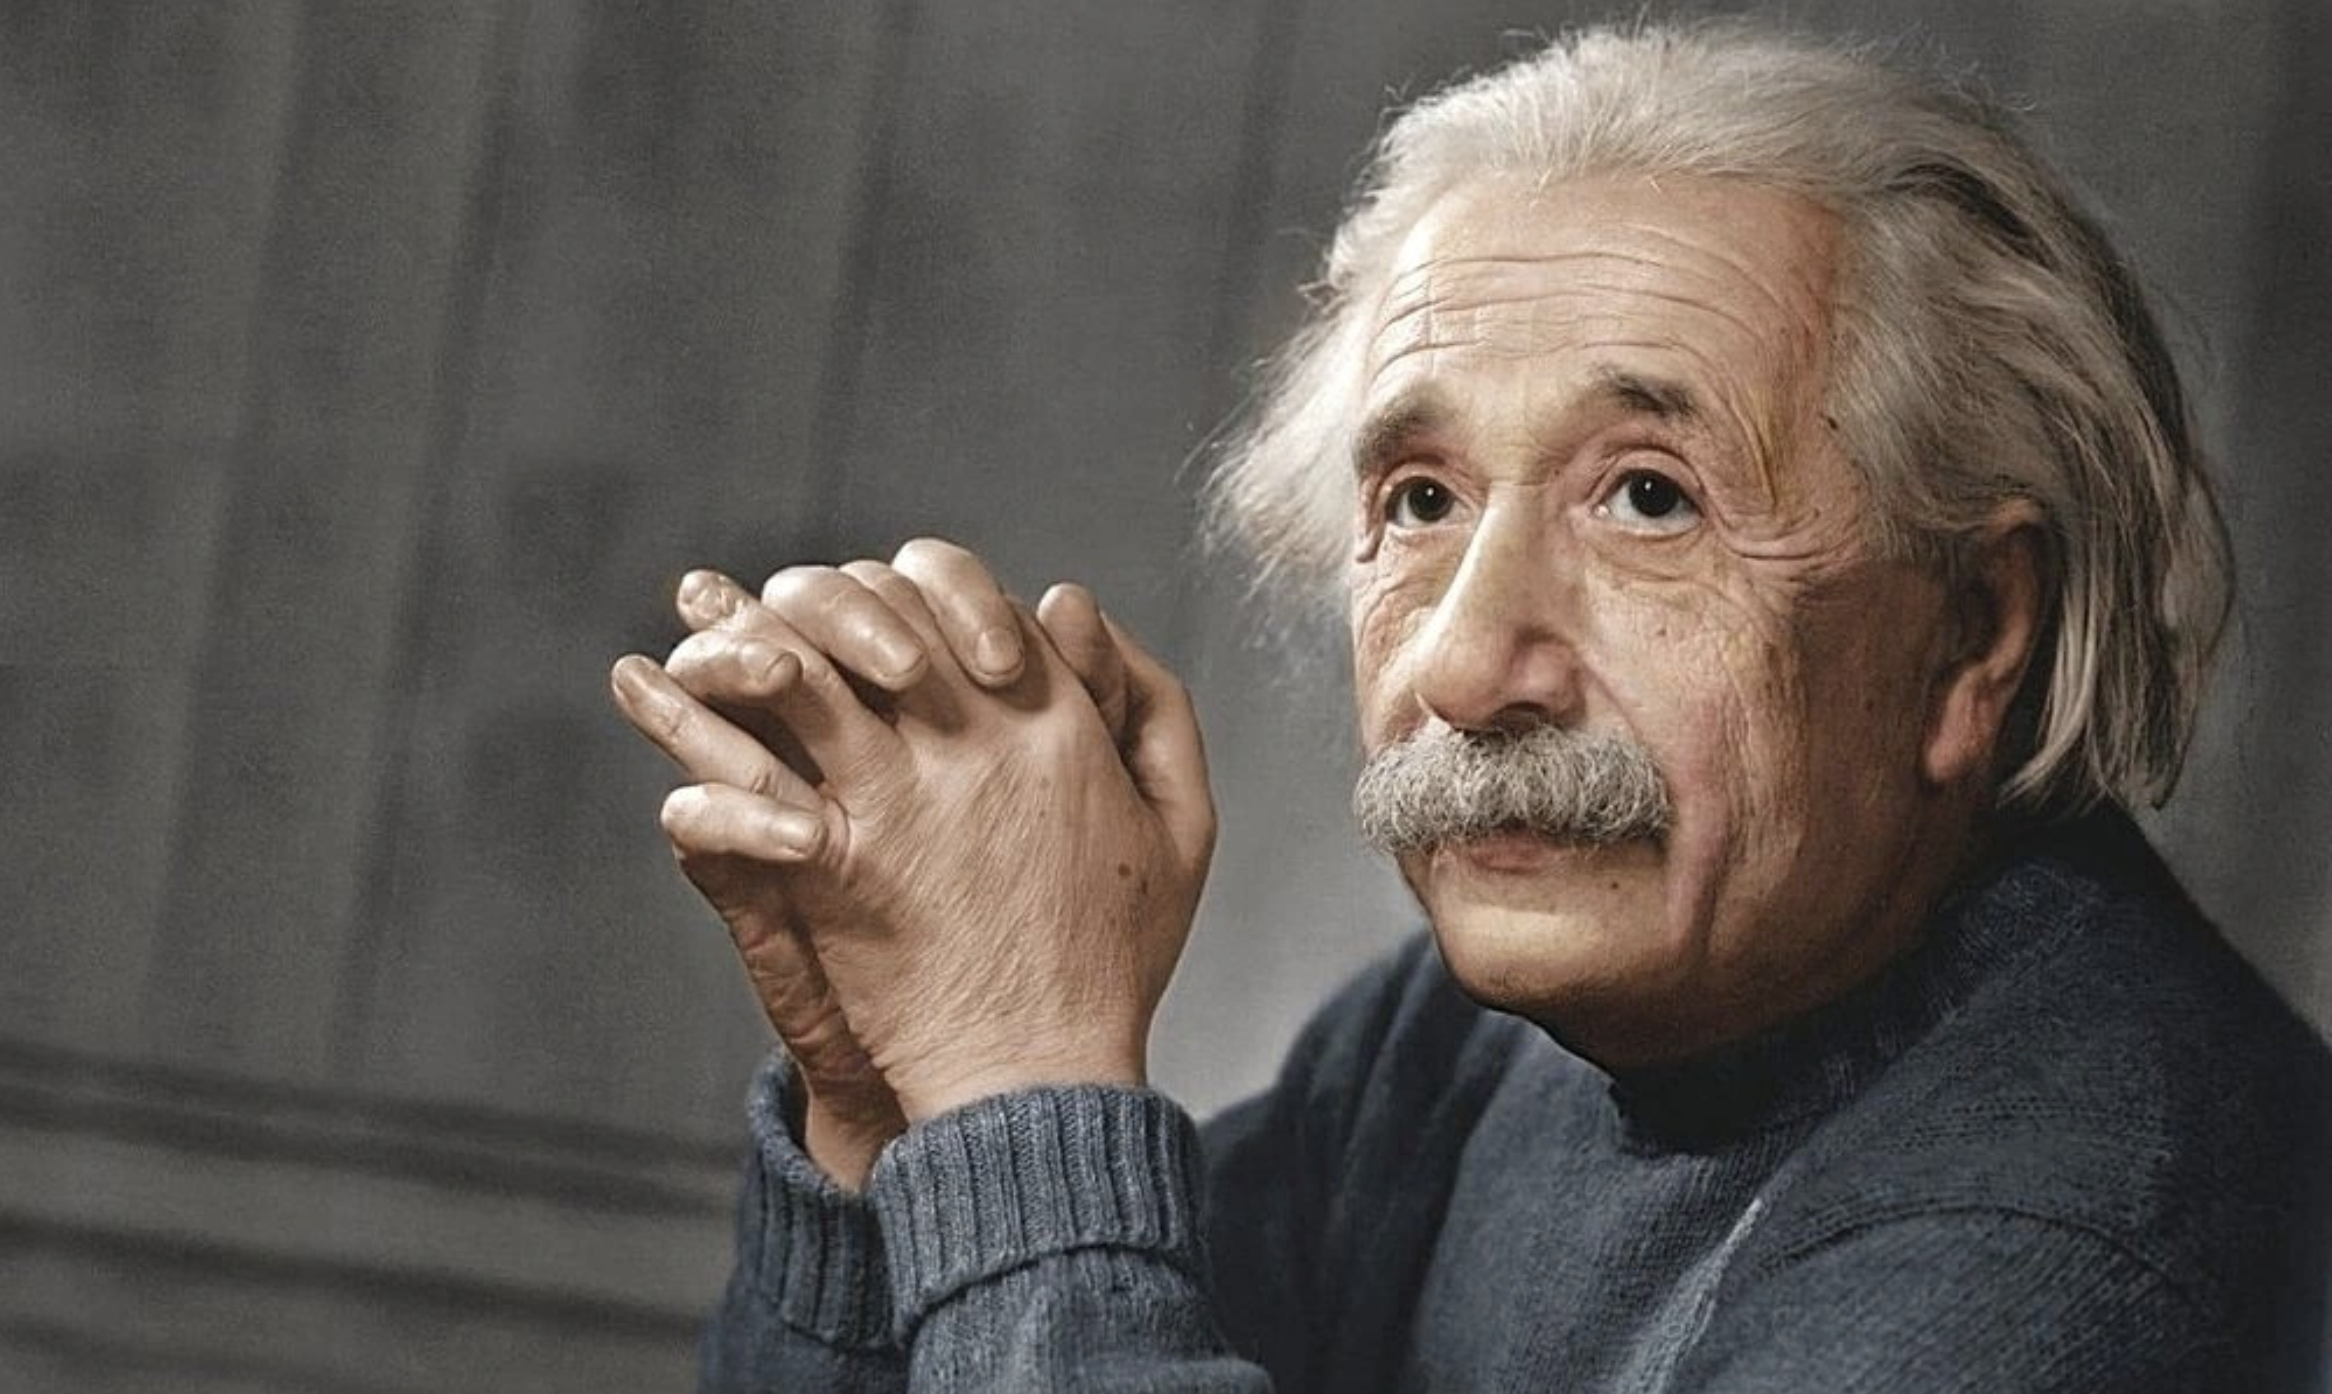 Nhật ký của một nhà giao dịch bền bỉ (Bài 5): Nhà khoa học vĩ đại Einstein sẽ làm gì trước khi giao dịch, đầu tư?